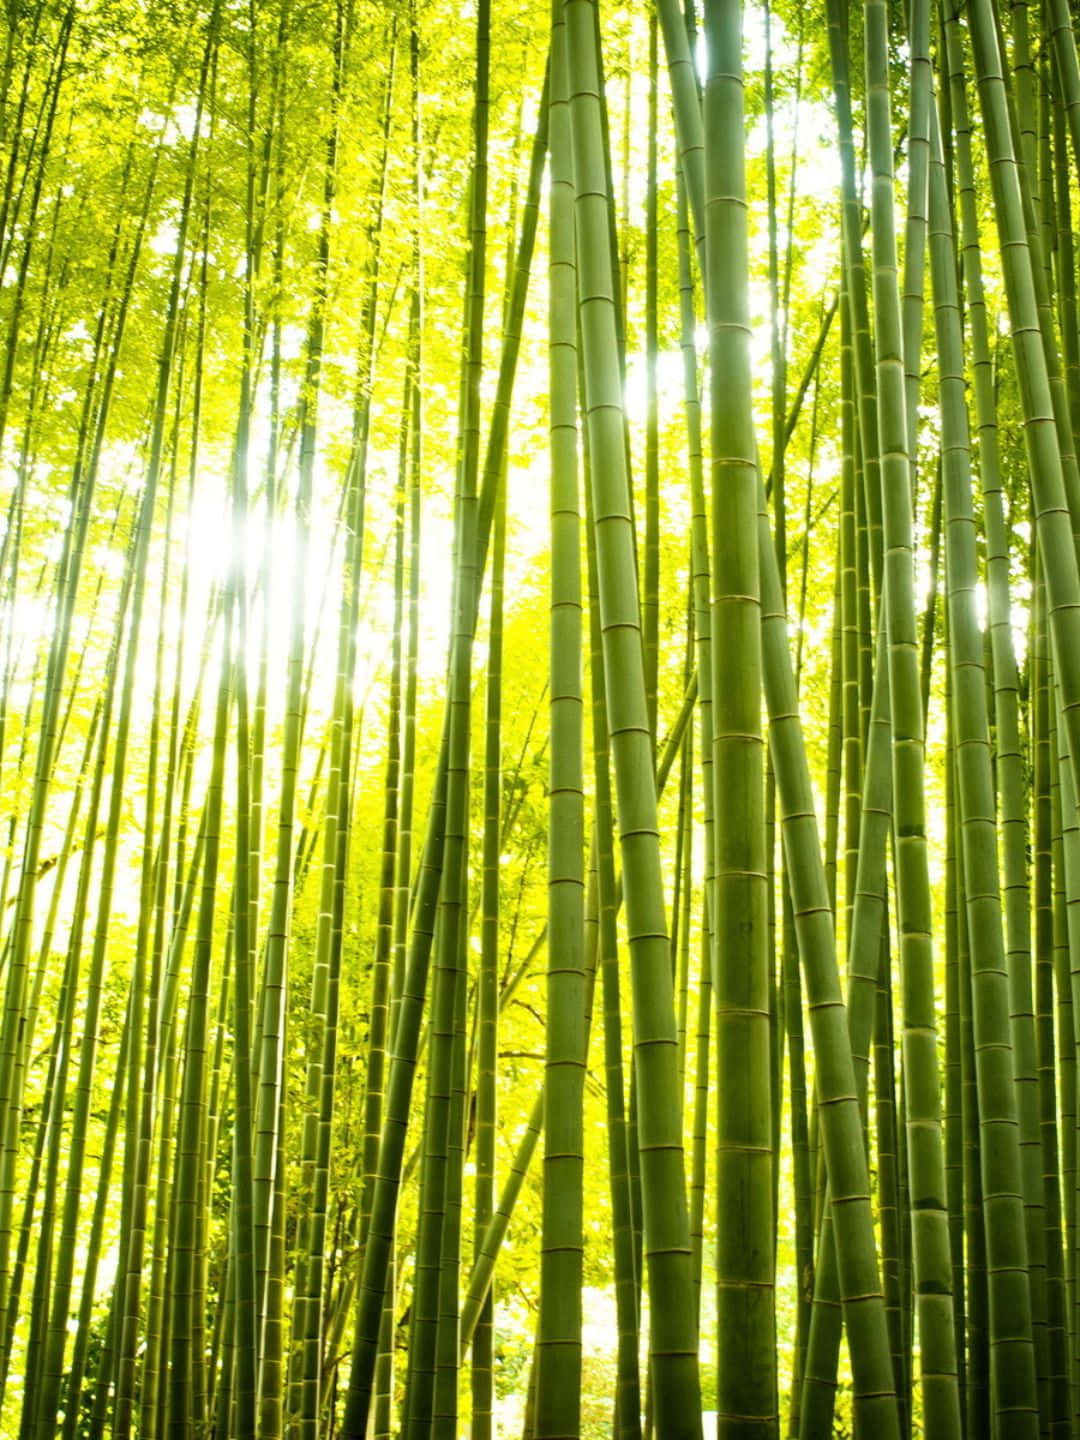 1440pfondo De Pantalla De Bambú Árboles De Bambú Con Una Luz Brillante